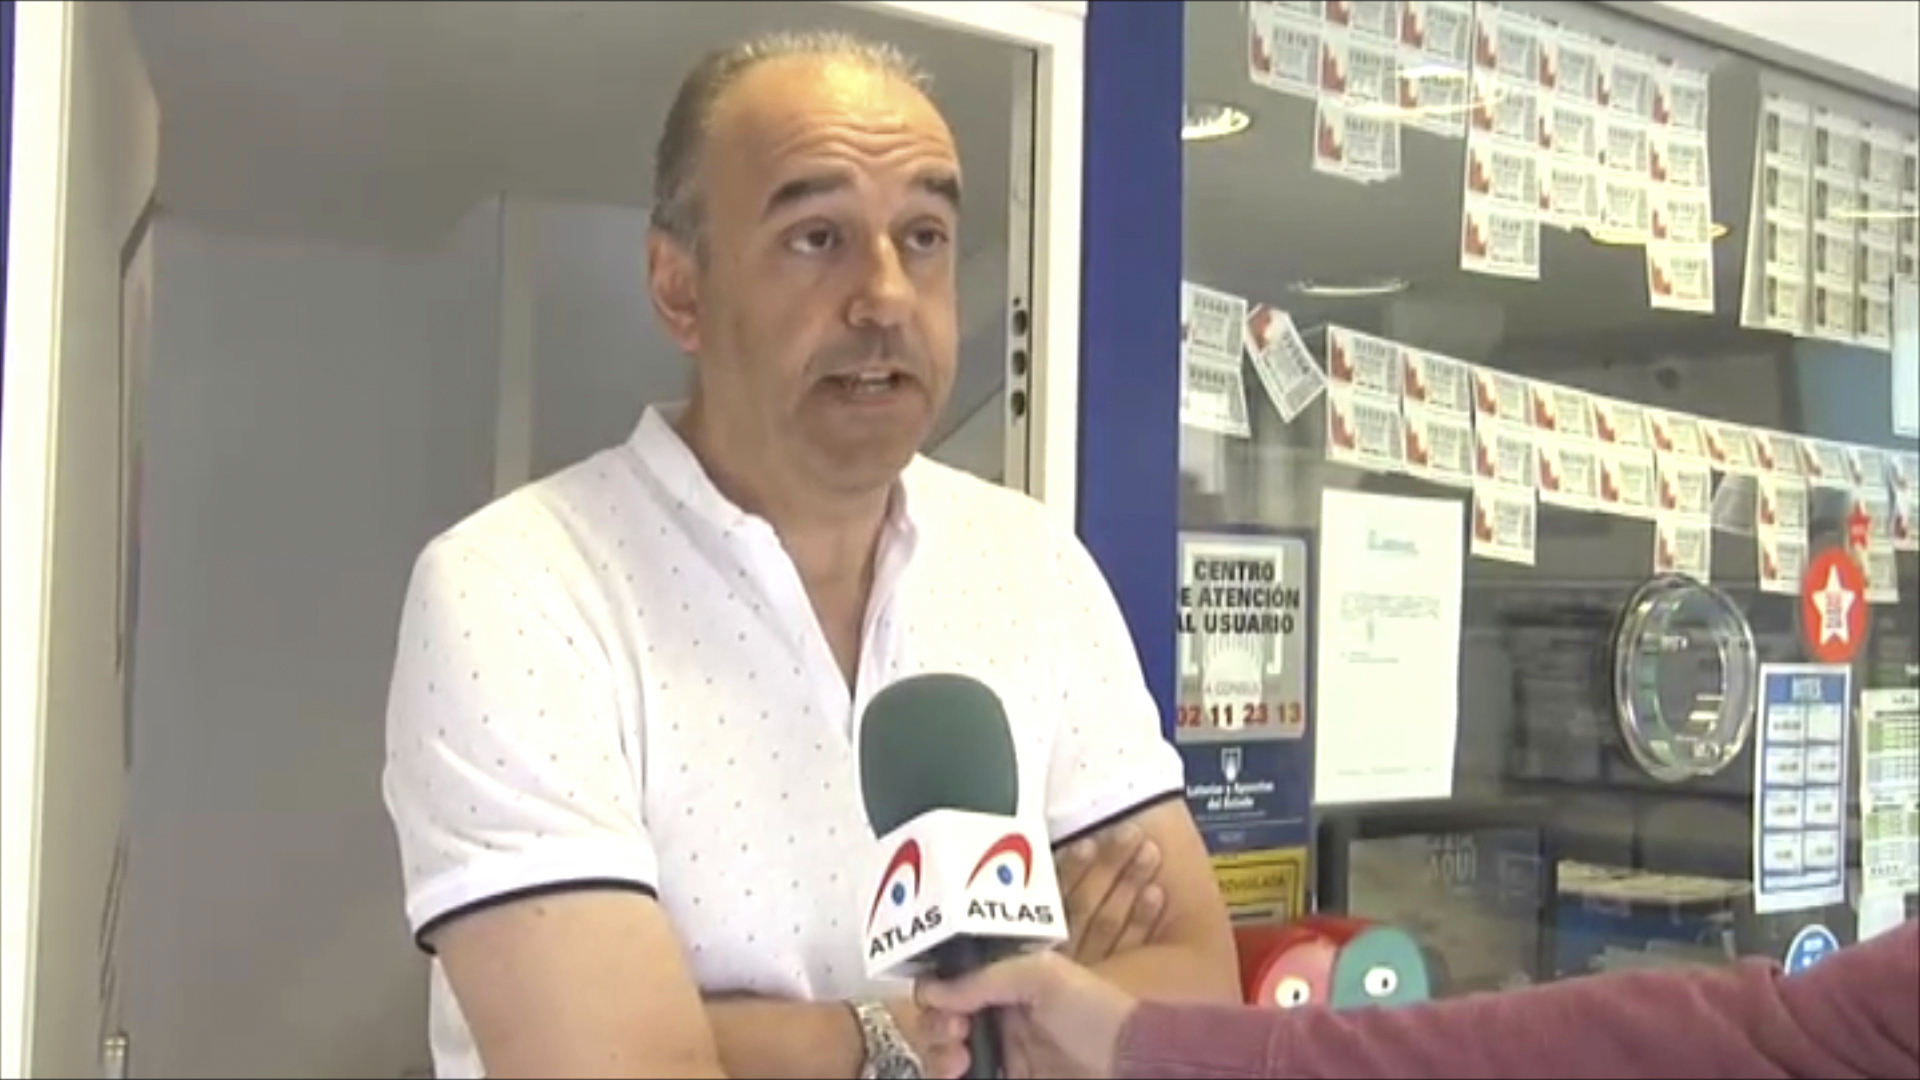 Manuel Reija, el lotero acusado de apropiarse del boleto premiado.